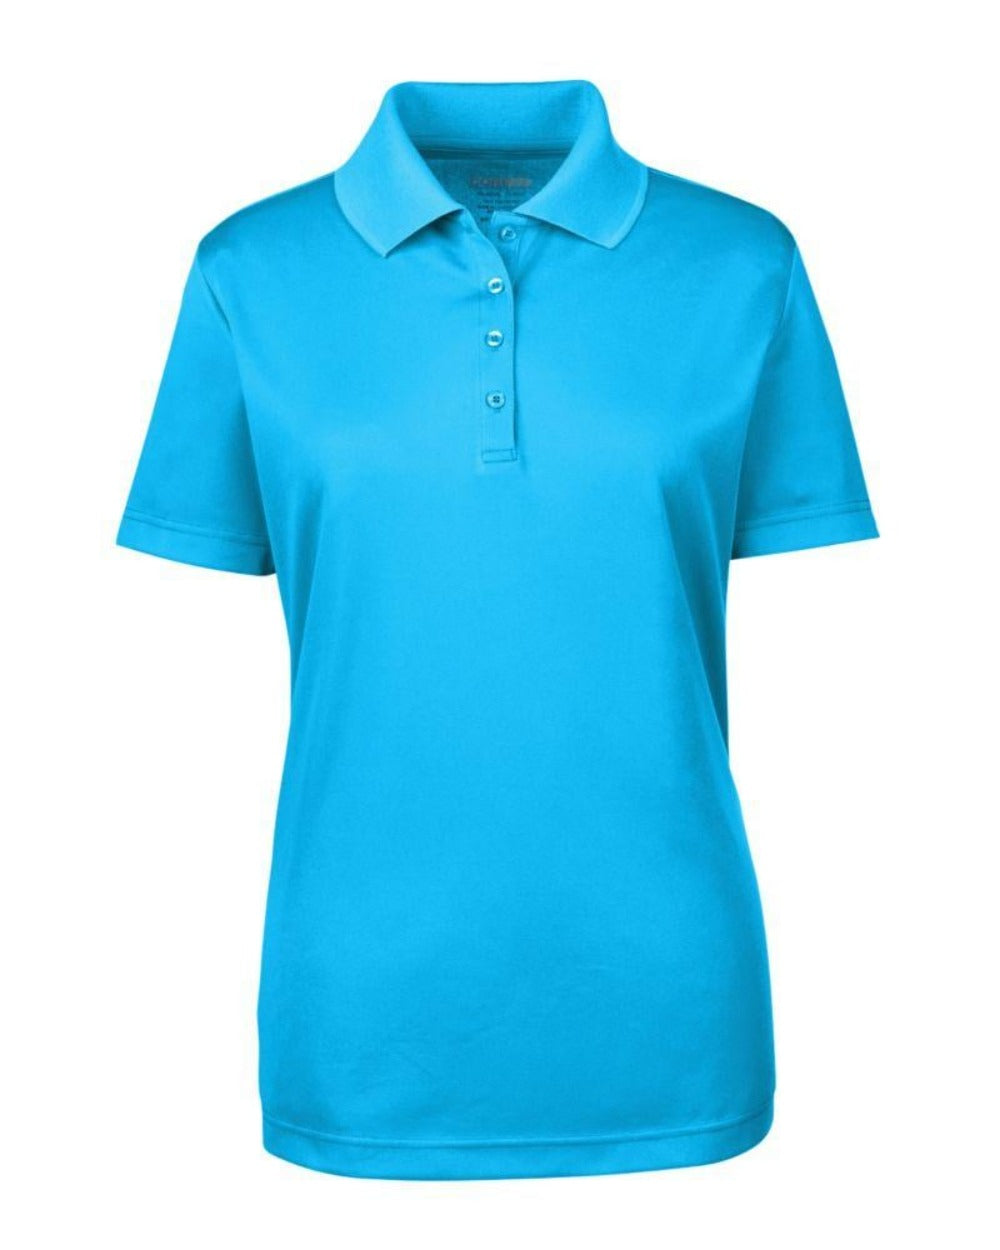 Blue Female Polo T-Shirt